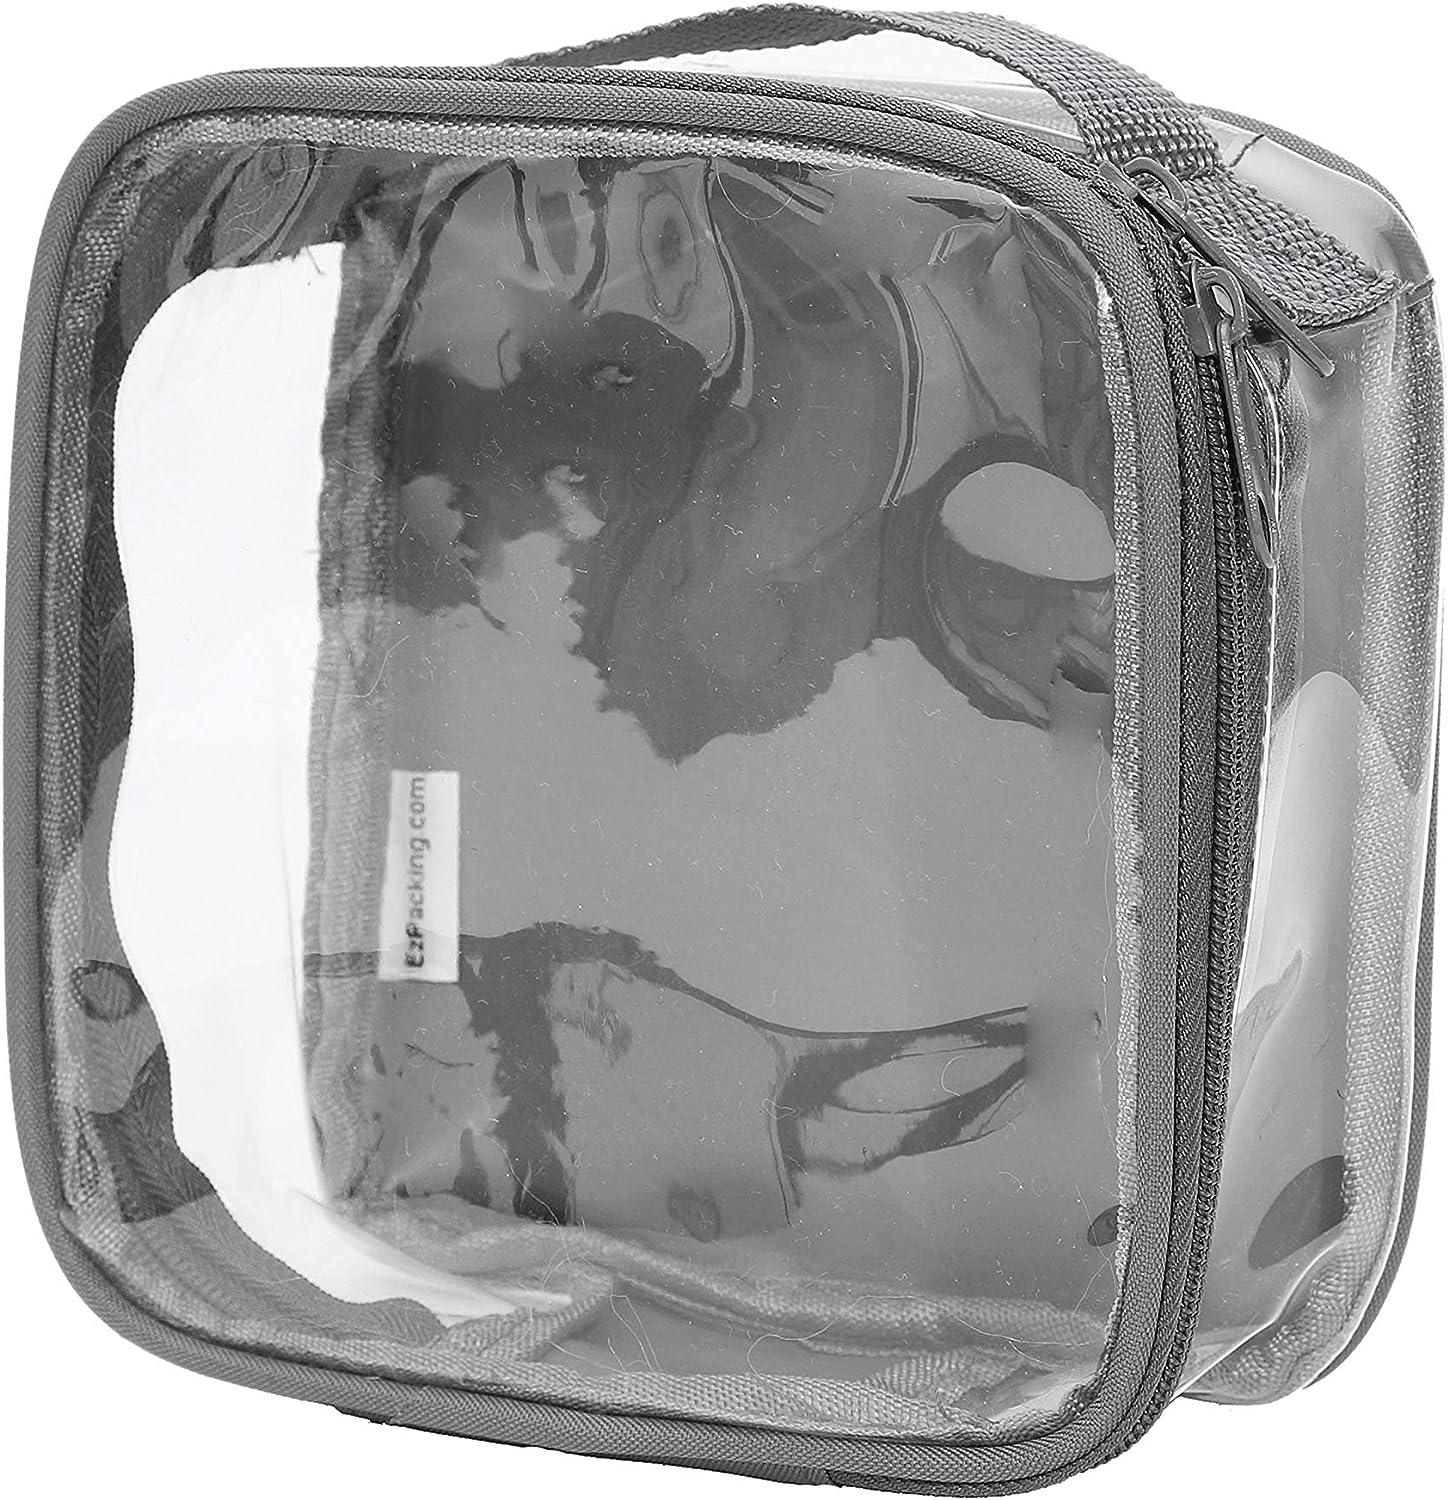 Bolsa de aseo transparente aprobada por la TSA para viajes, compatible con  aerolíneas, tamaño de cuarto de galón 3-1-1, bolsa de equipaje para